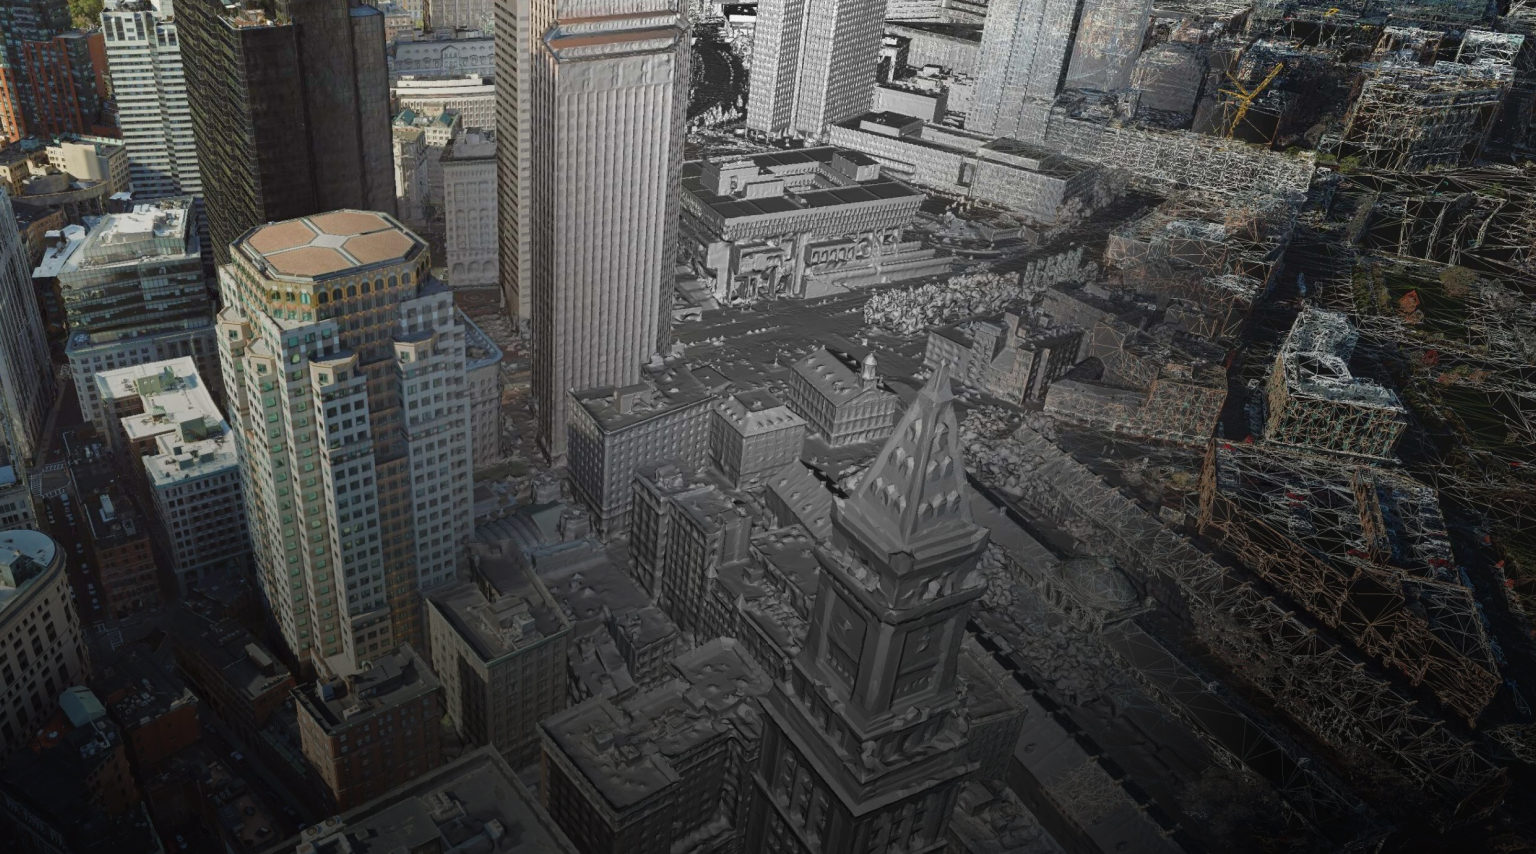 Image de photogrammétrie d’une zone de centre-ville avec des bâtiments 3D grands et petits